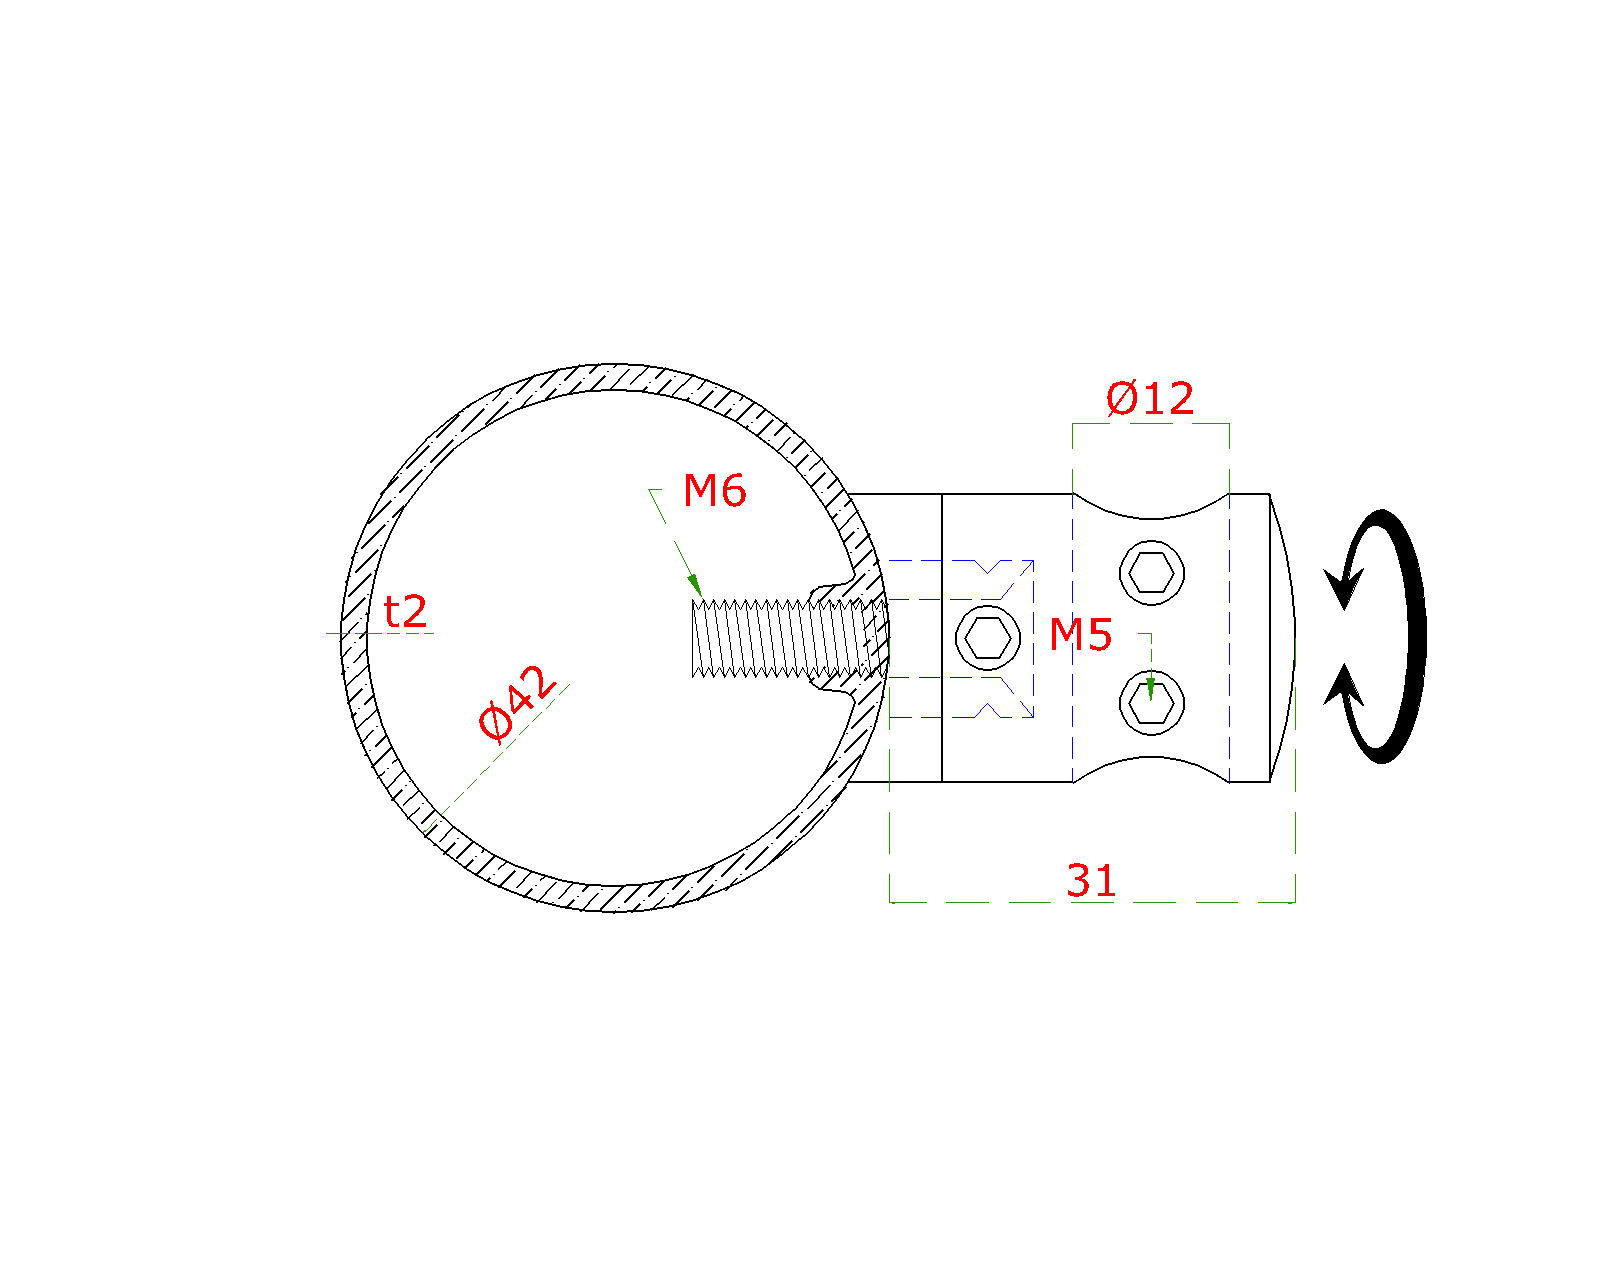 Držák tyče spojovací ø 14 mm přechodný na trubku ø 42.4 mm (30x22 mm), broušená nerez K320 / AISI304